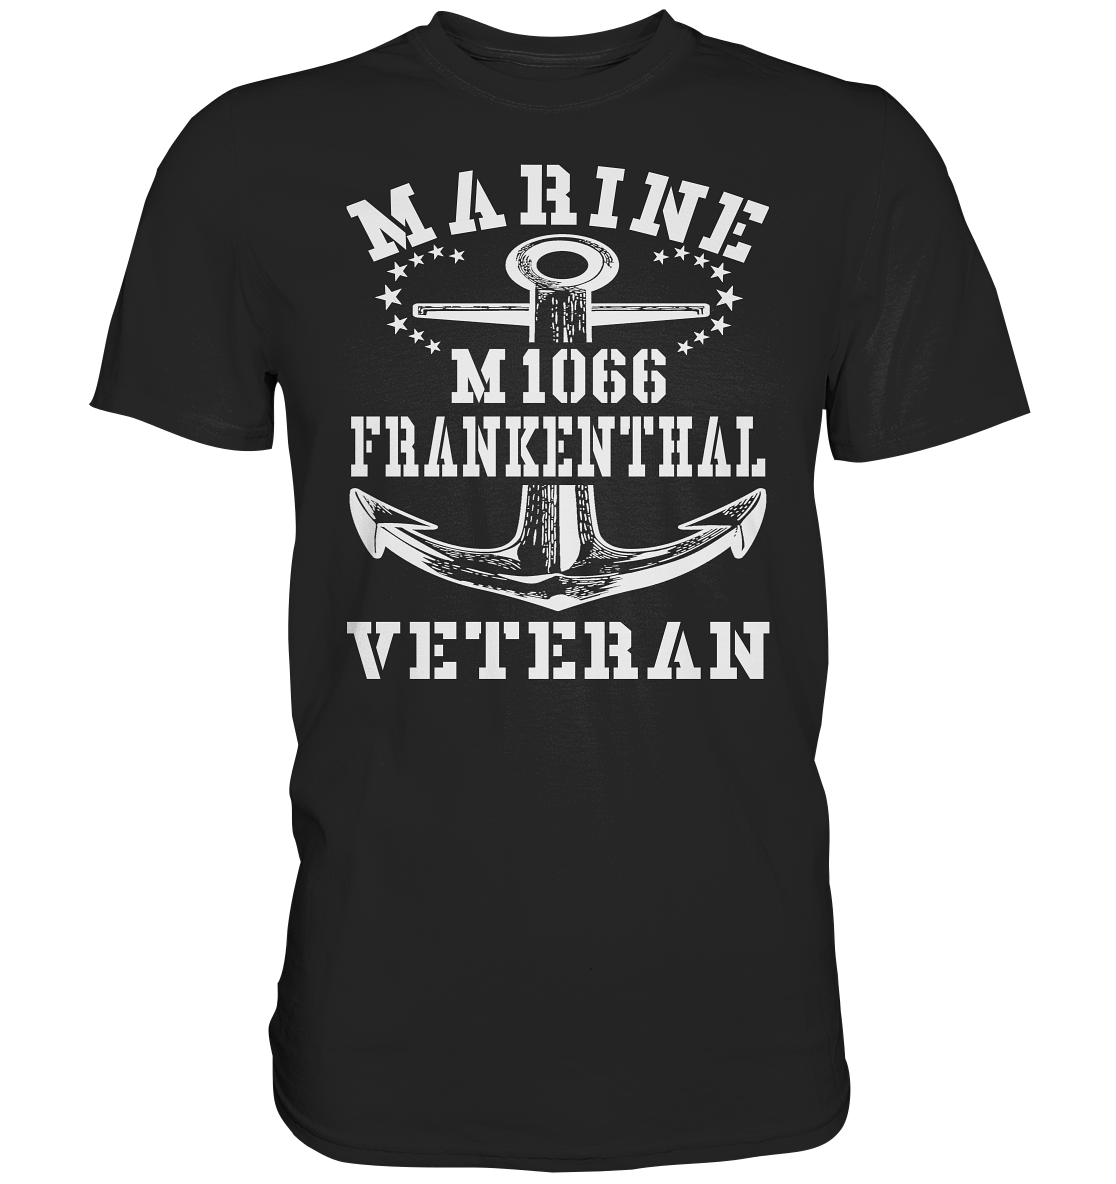 Mij.-Boot M1066 FRANKENTHAL Marine Veteran - Premium Shirt